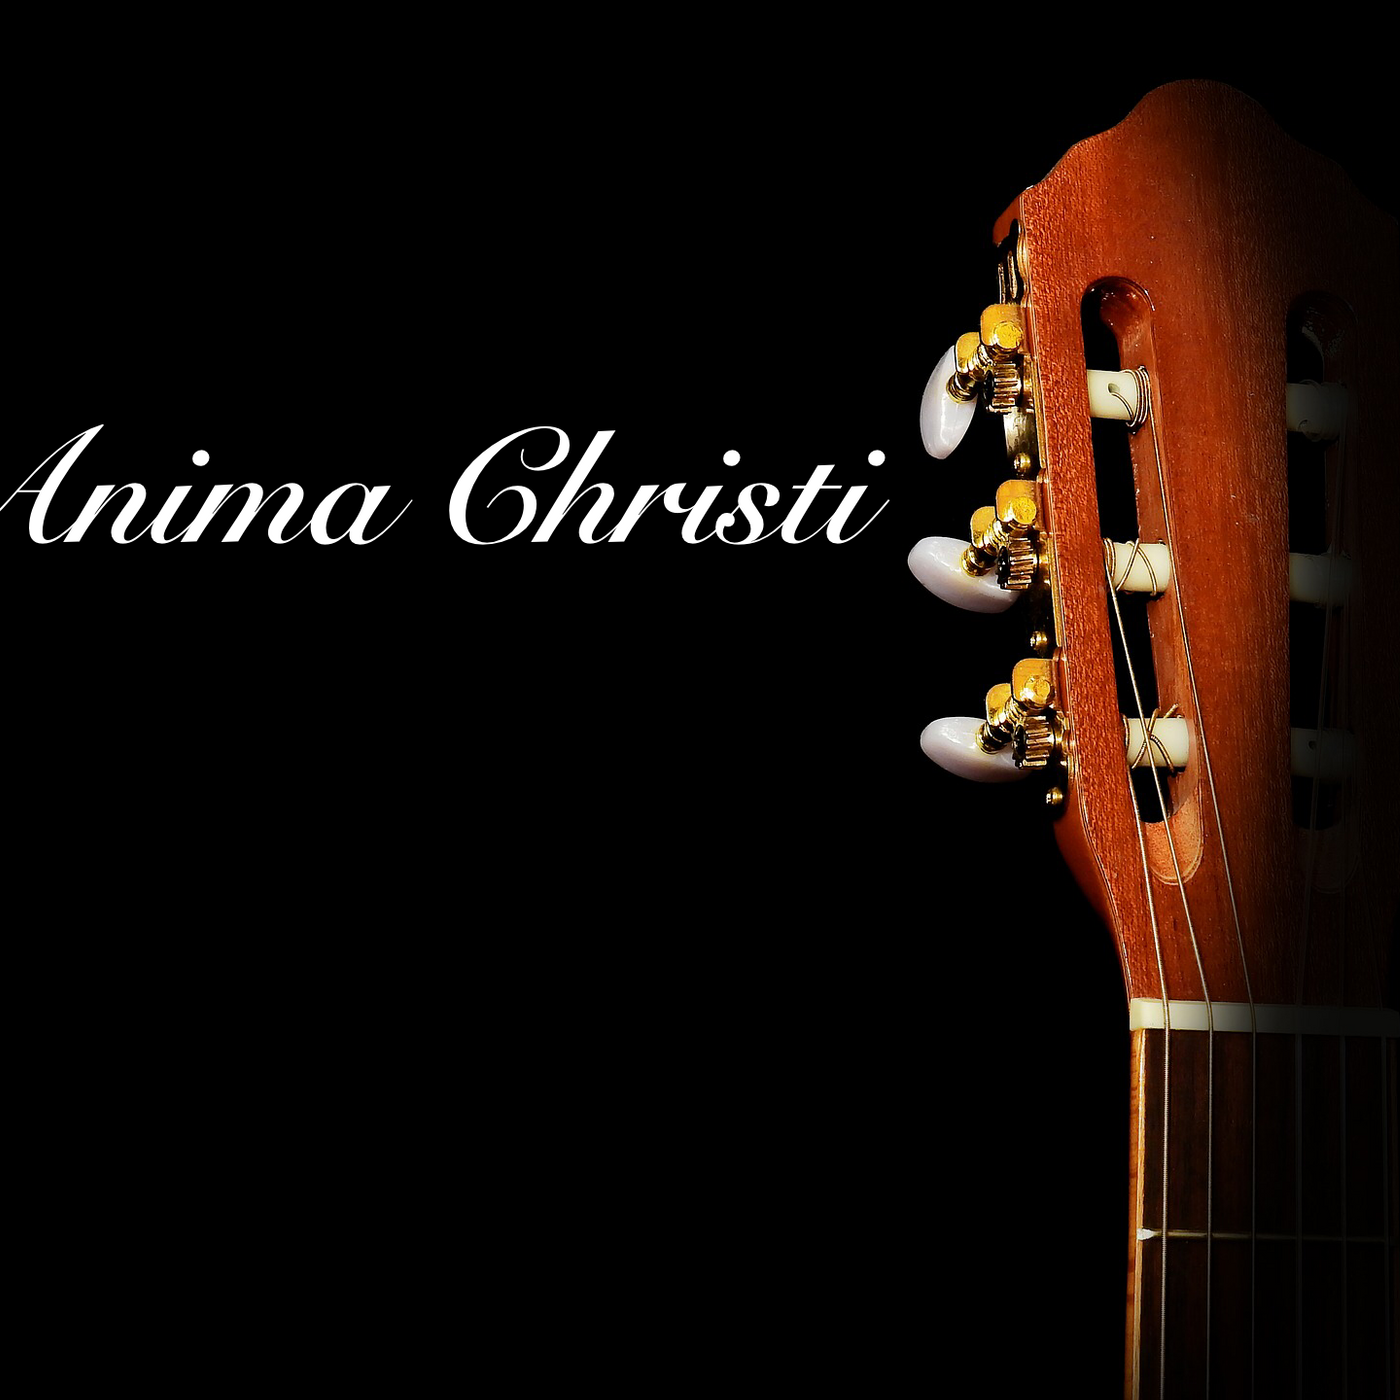 Anima Christi